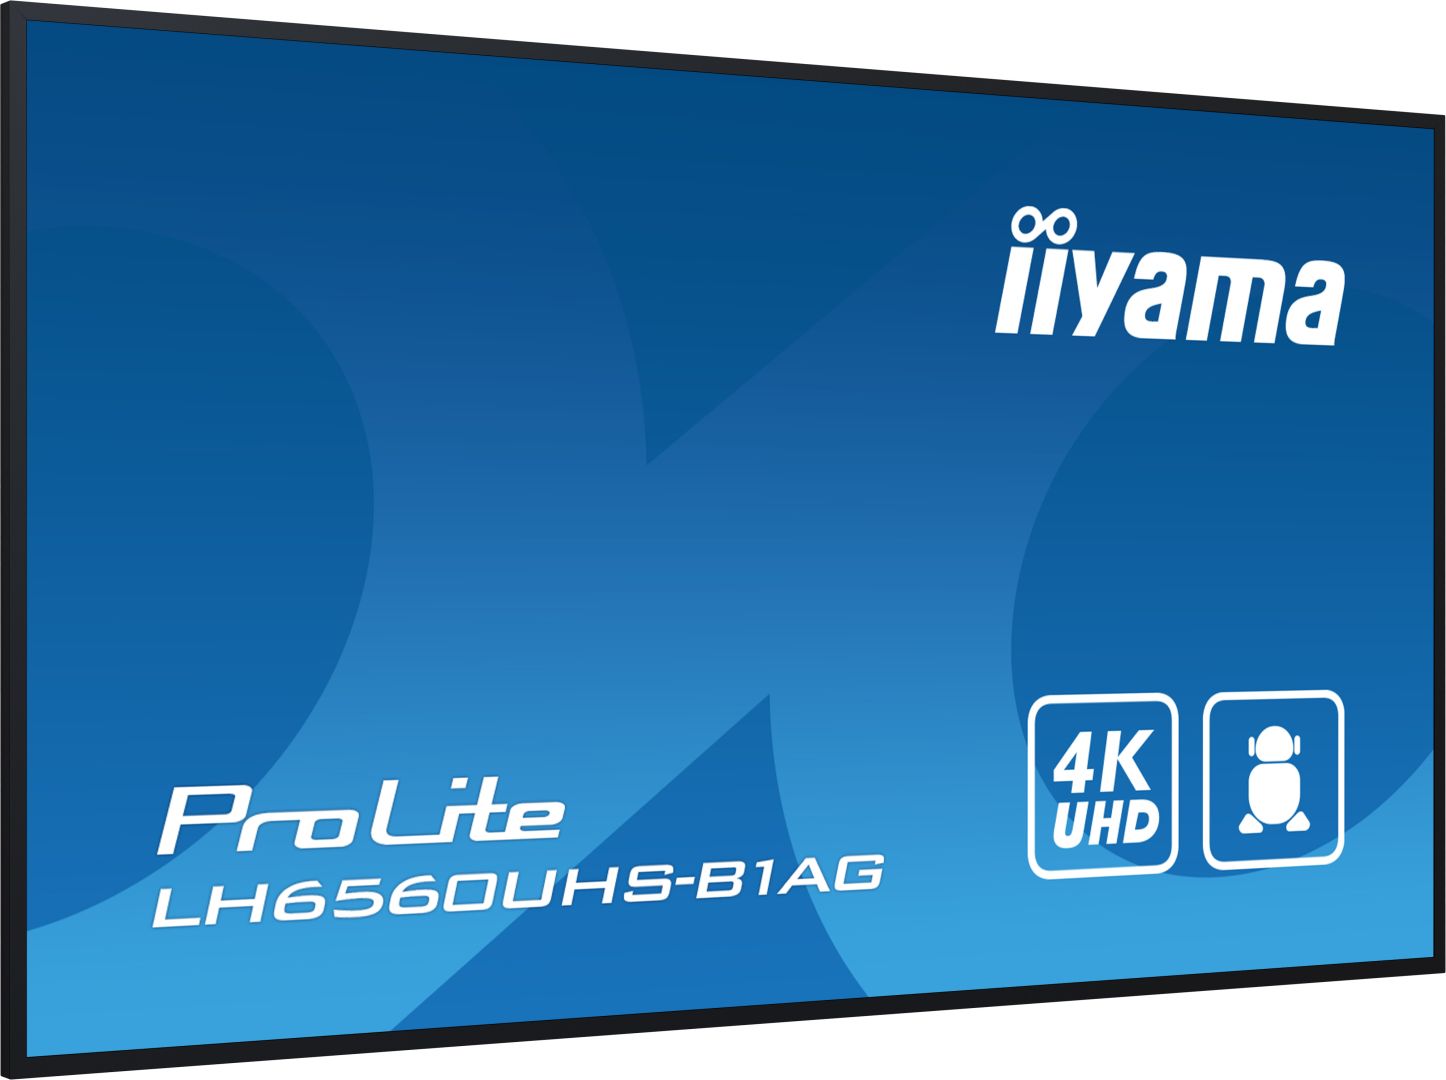 iiyama 65" ProLite LH6560UHS-B1AG LED Display-5